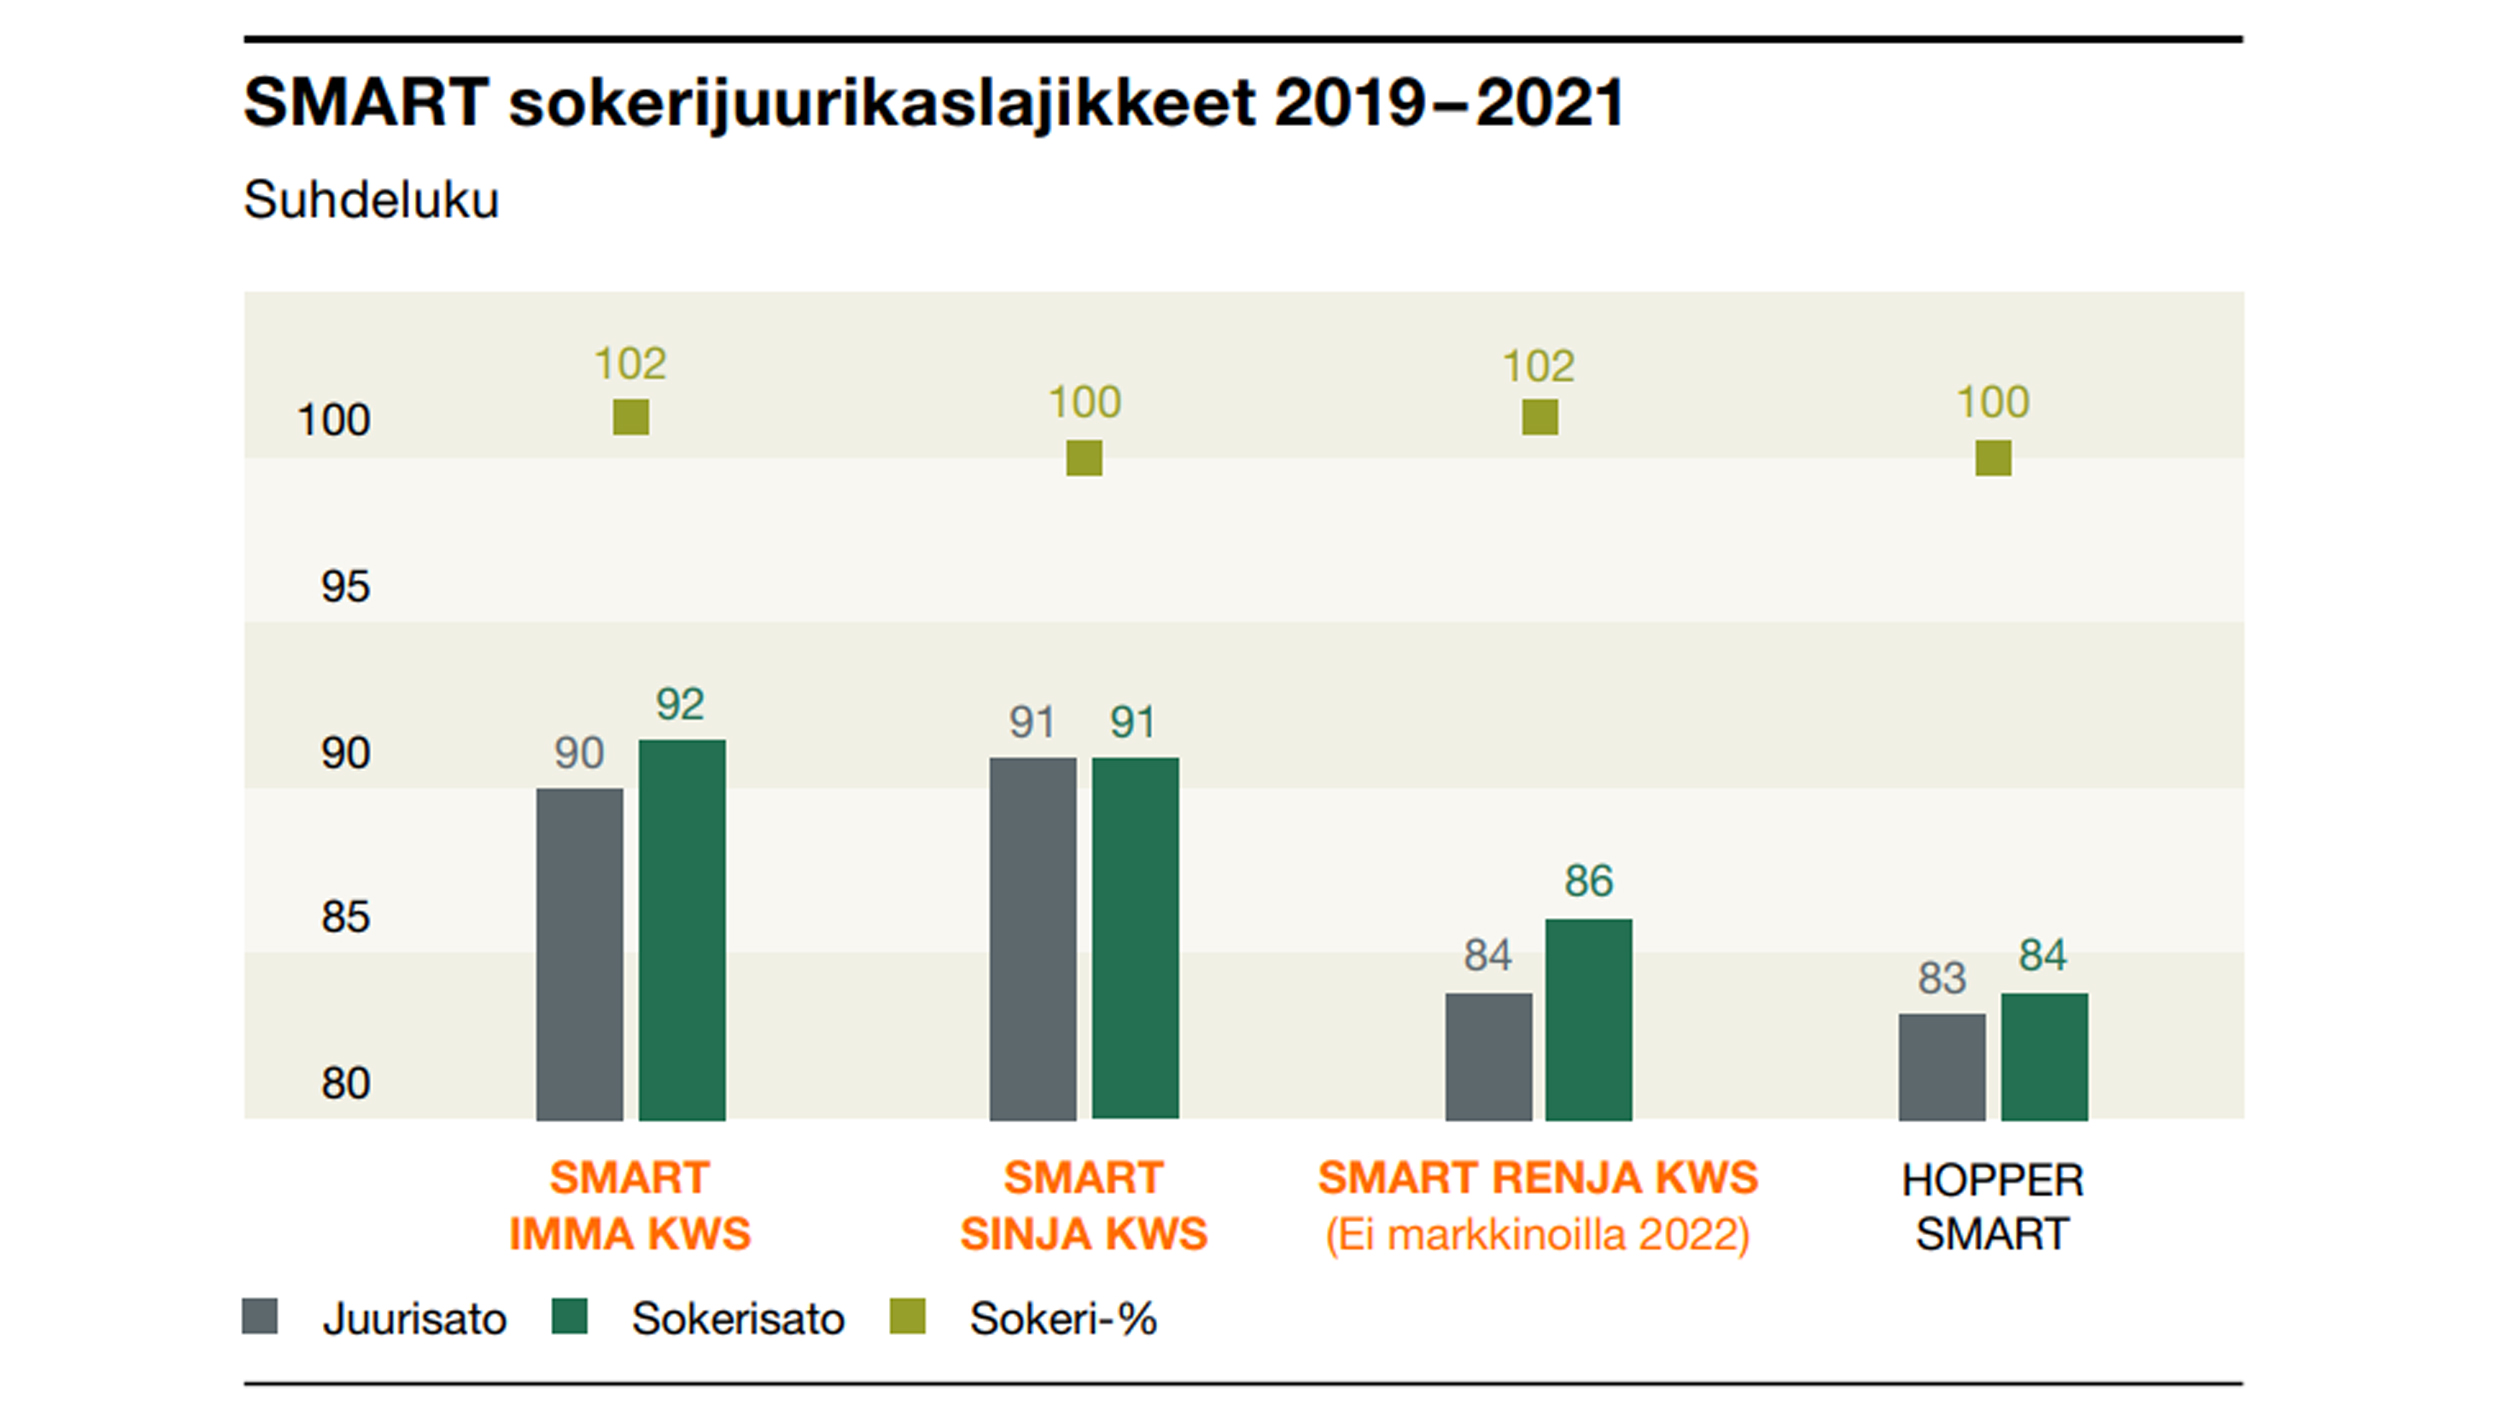 Lähde: Sokerijuurikkaan Tutkimuskeskus, lajikekokeet 2019–2021.